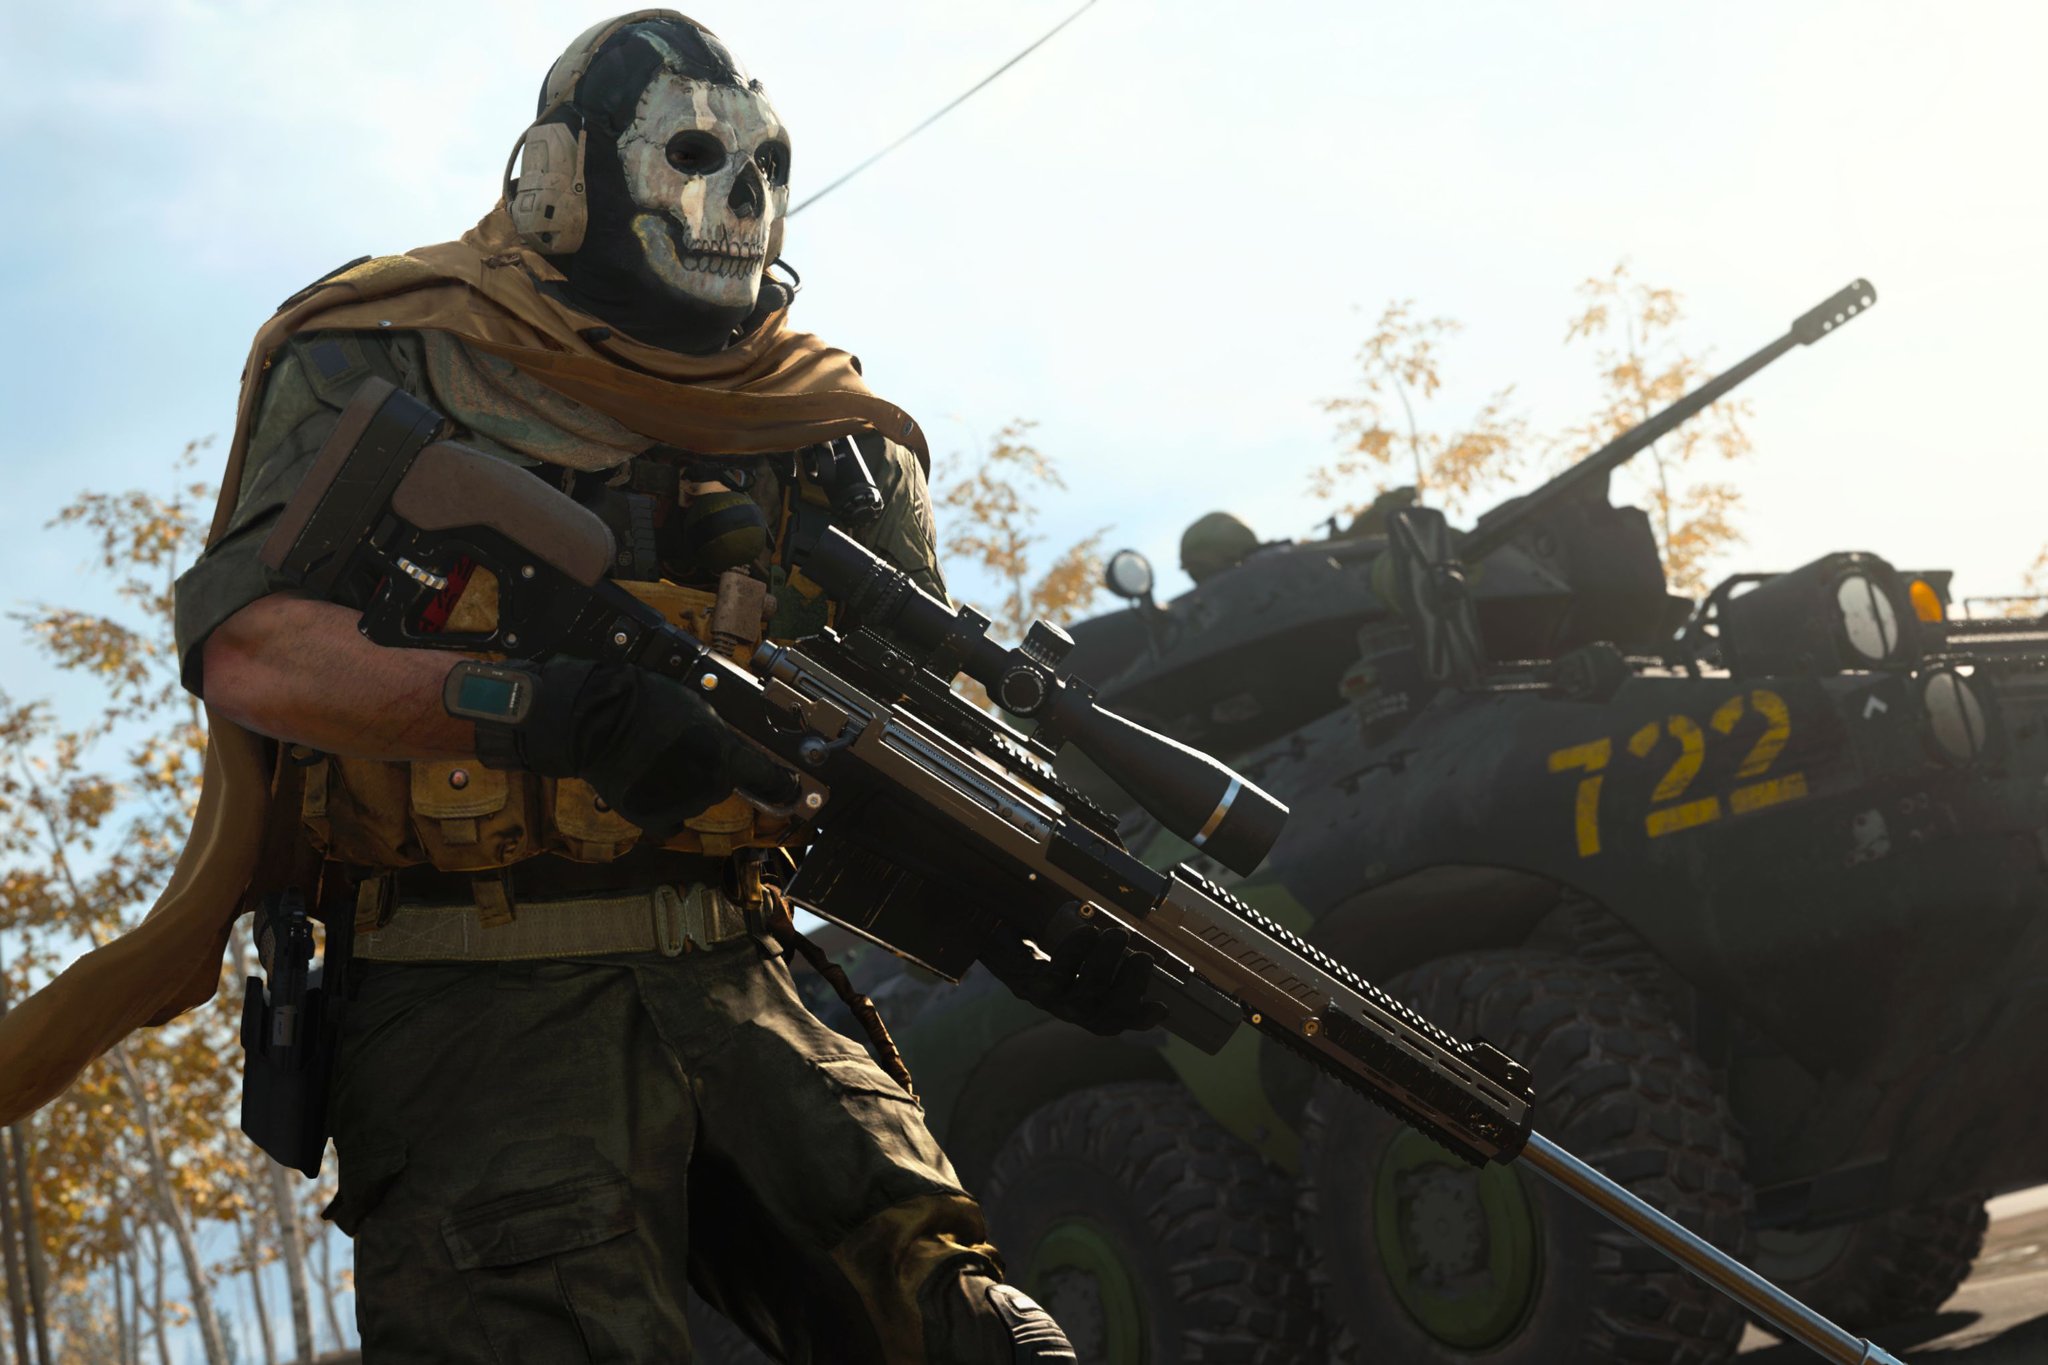 Call of Duty MW2 Best Weapons Tier List (Season 2)